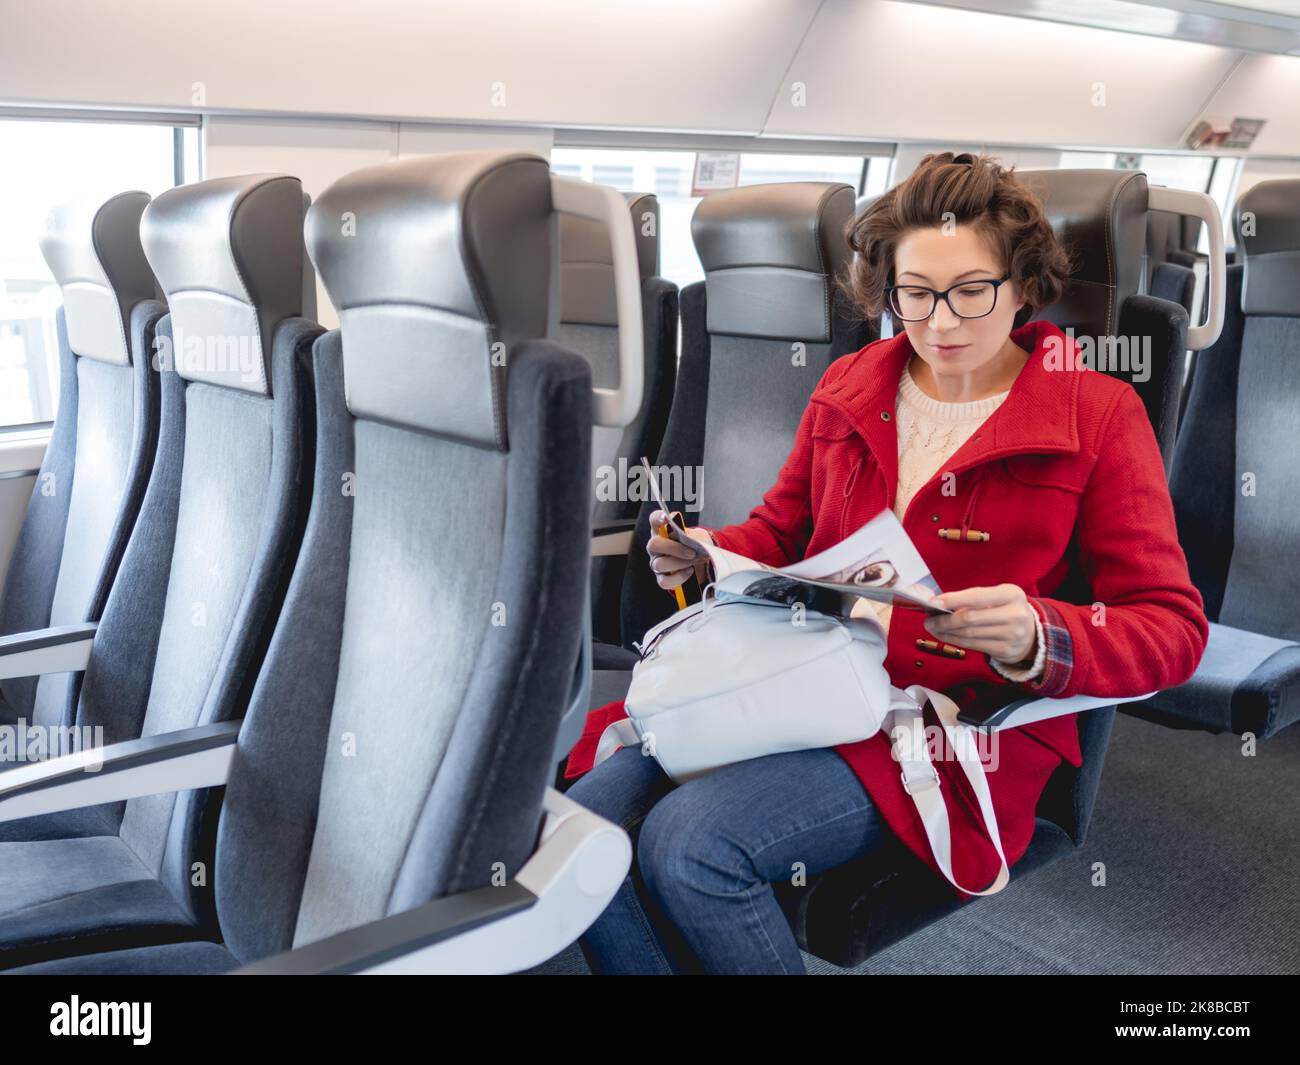 Femme en duffle-coat rouge lit le magazine en train de banlieue. Informations sur le support imprimé. Voyager en véhicule terrestre. Banque D'Images